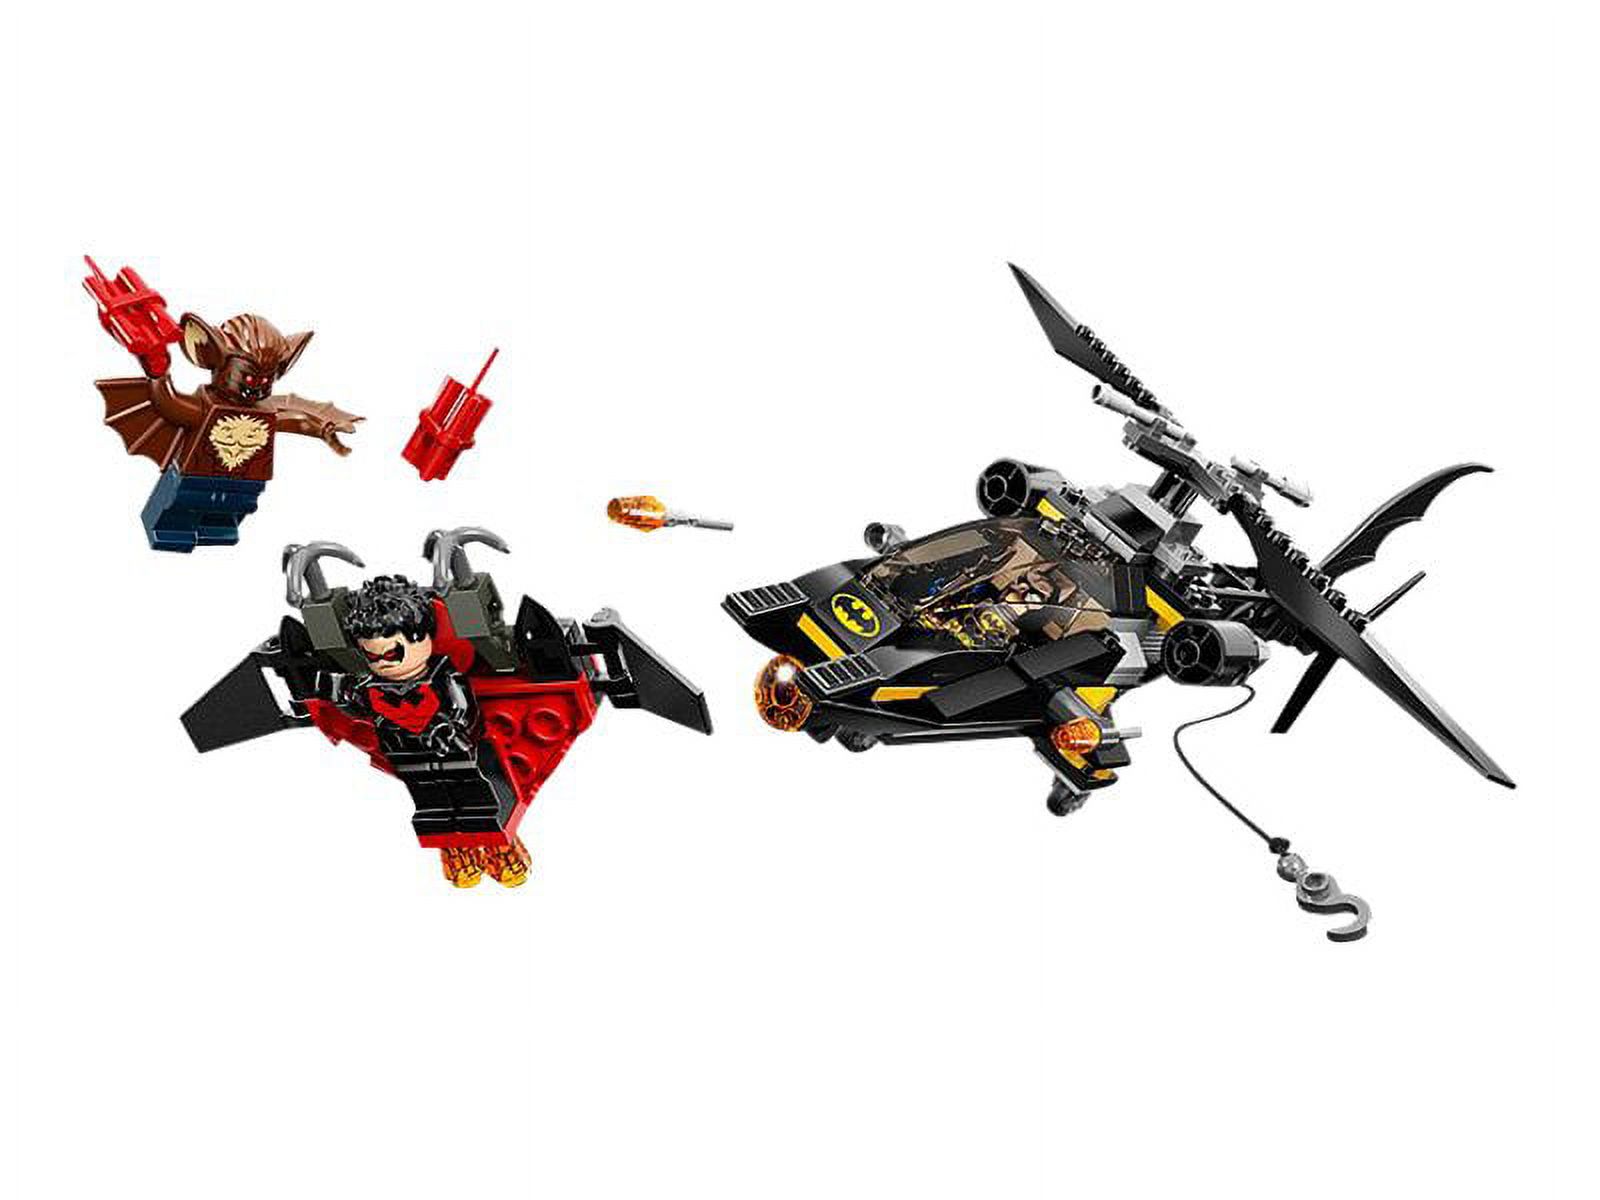 LEGO DC Comics Super Heroes 76011 - Batman: Man-Bat Attack - image 2 of 3